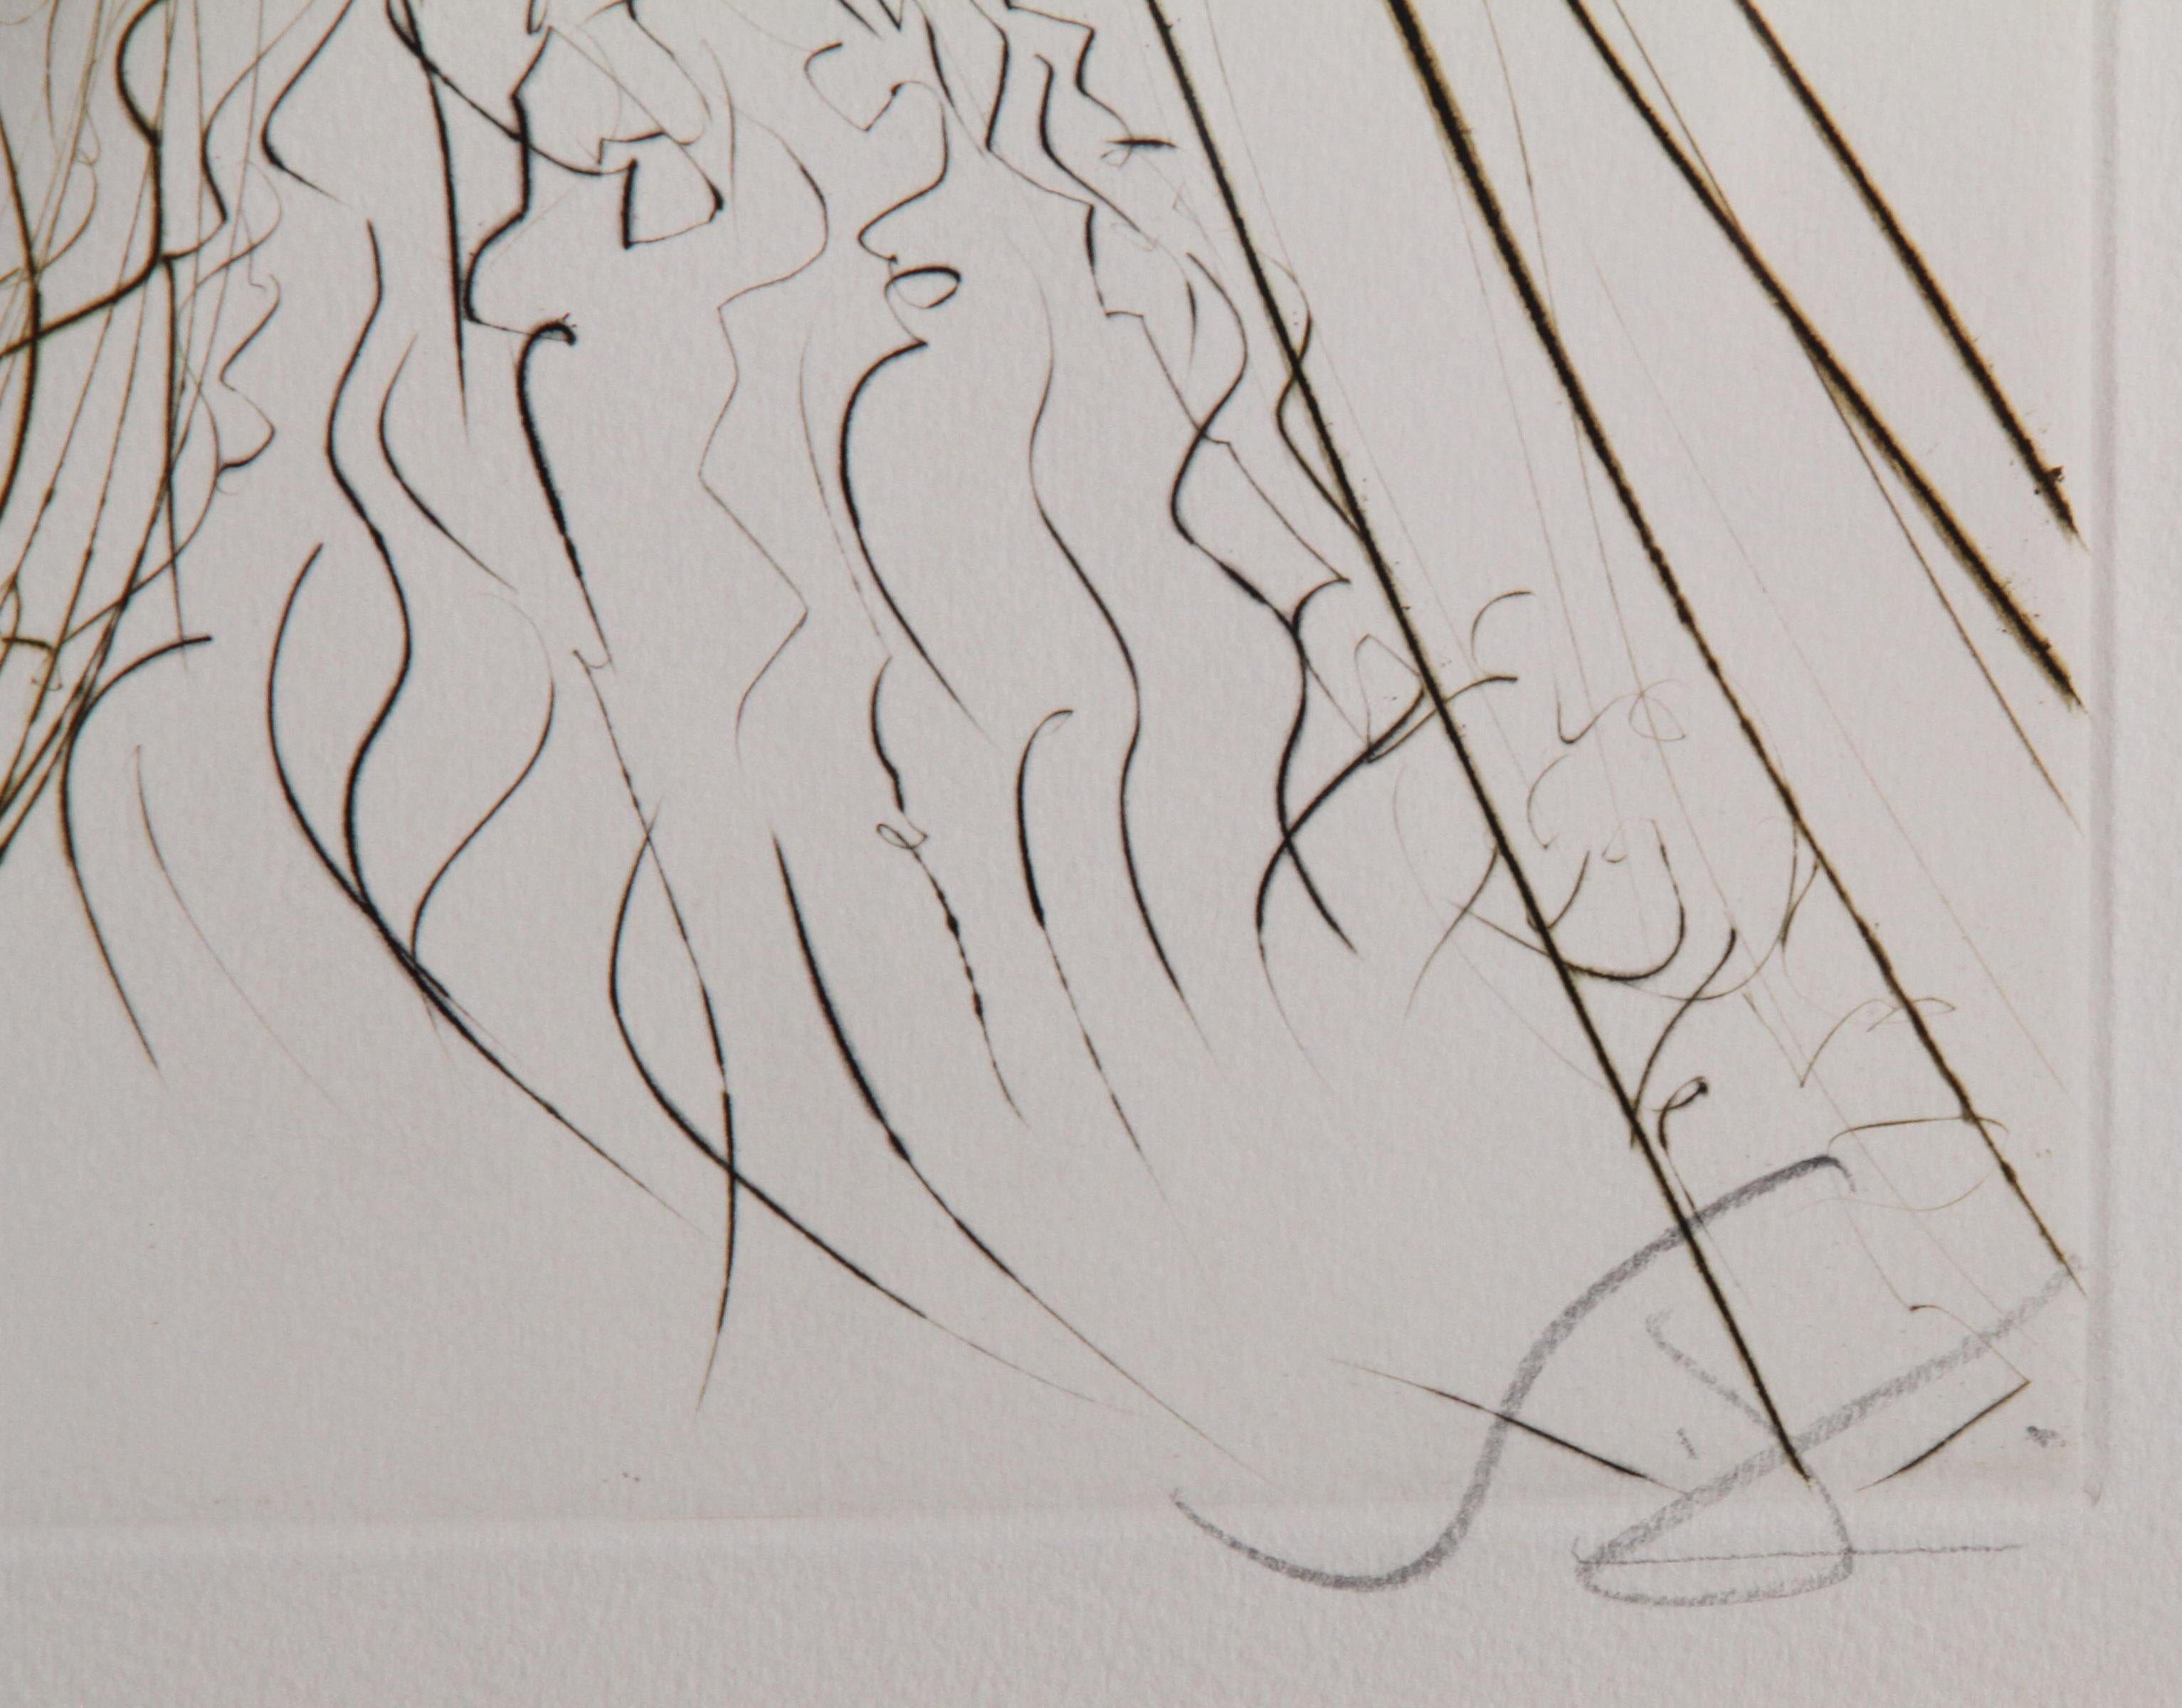 Le Roi Marc de Tristan et Iseult, gravure encadrée de Salvador Dali - Print de Salvador Dalí